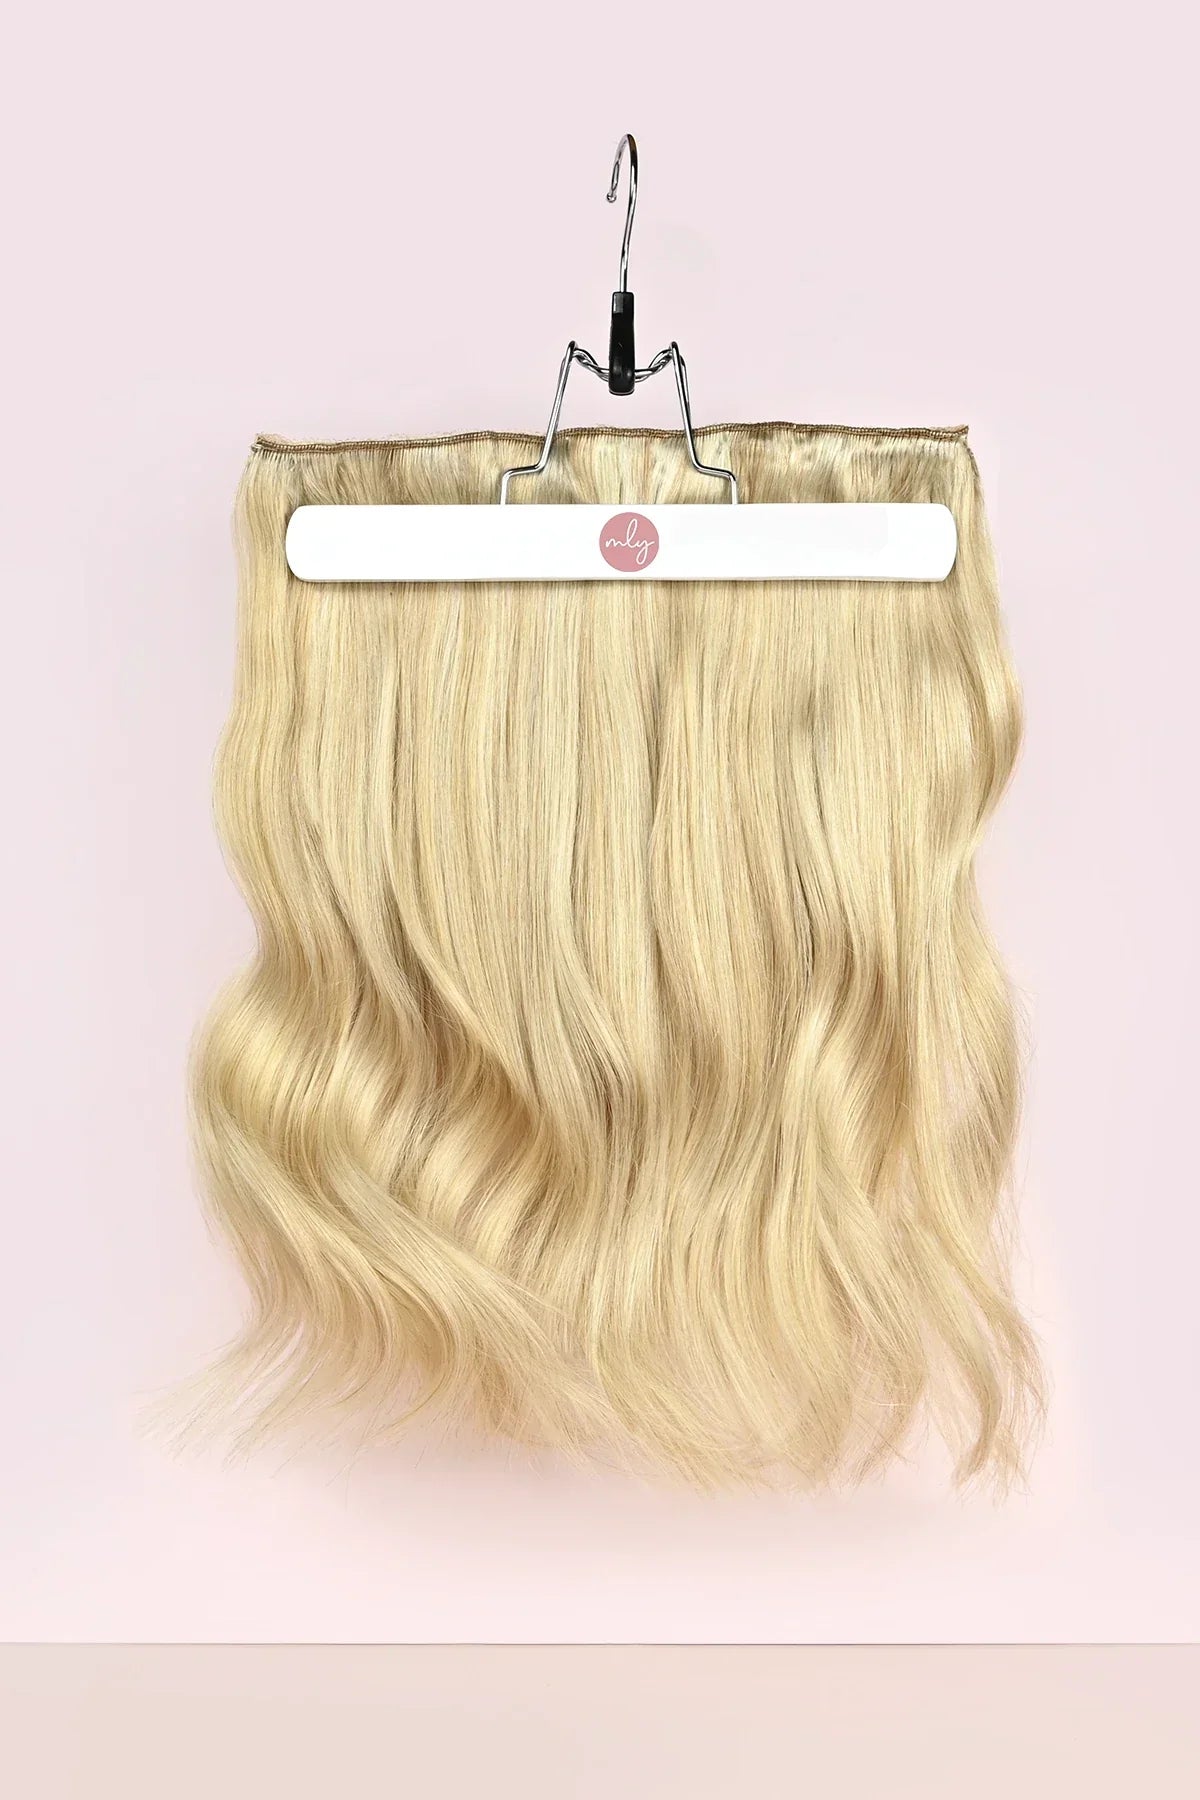 Goedkope Natural blonde clip-in hairextensions met subtiele highlights. De beste hairextensions van Nederland met remy human hair en double drawn echt haar.